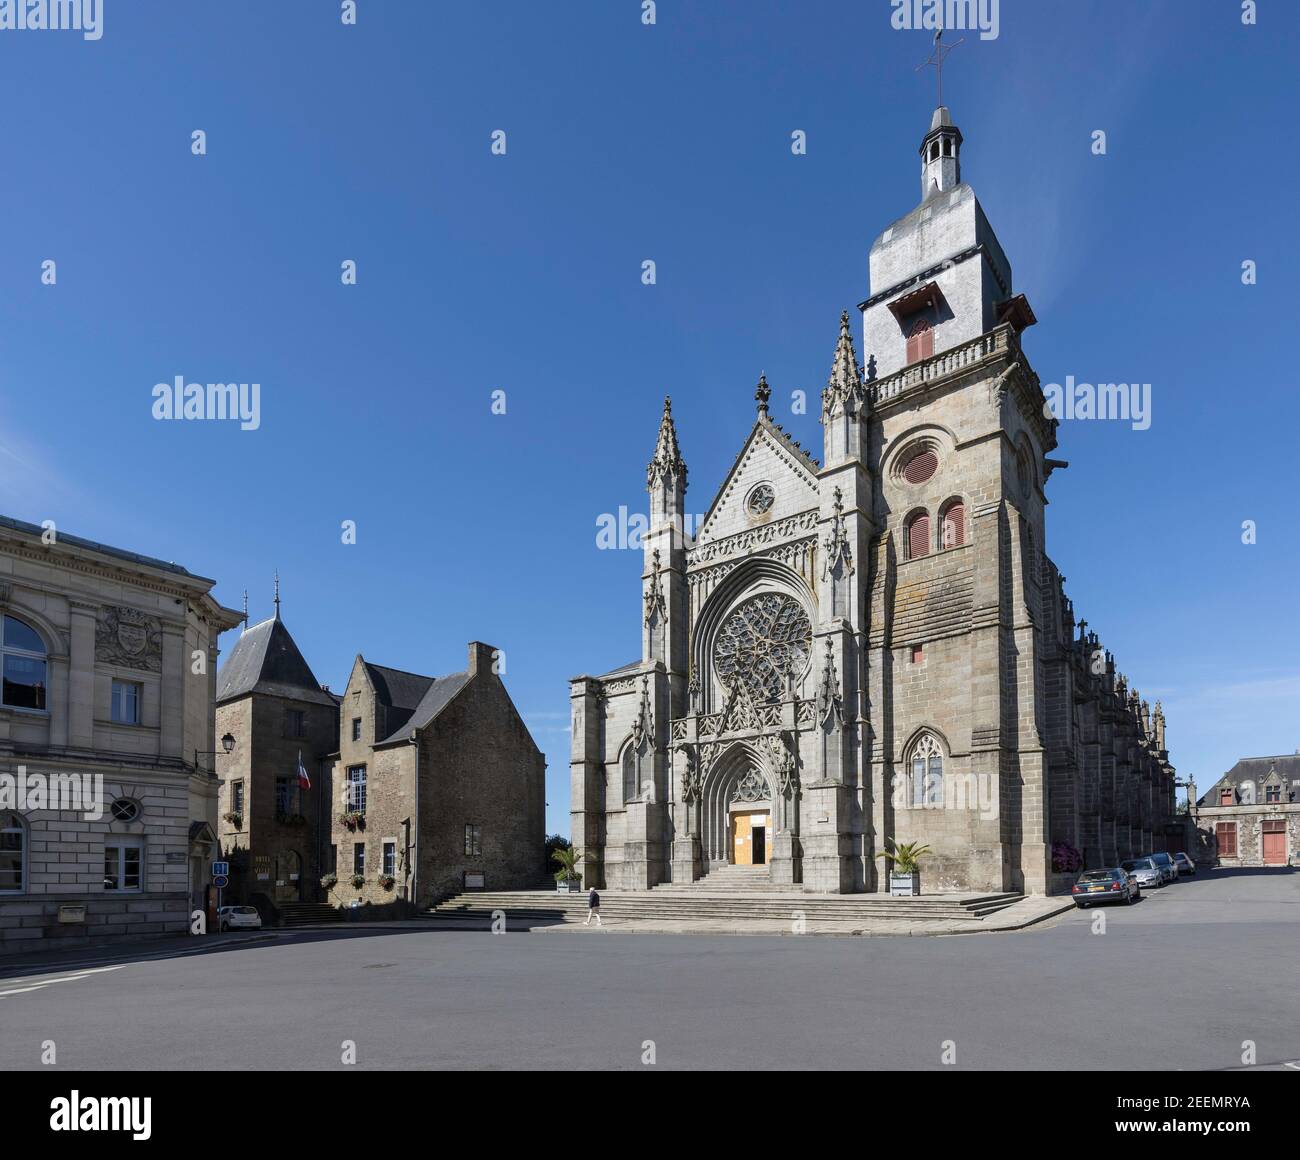 Vorderansicht der Kirche von Saint Leonard, Fougeres, Frankreich zeigt den eingeschränkten Zugang zu COVID-19 Vorschriften unter einem klaren blauen Himmel zu erfüllen Stockfoto